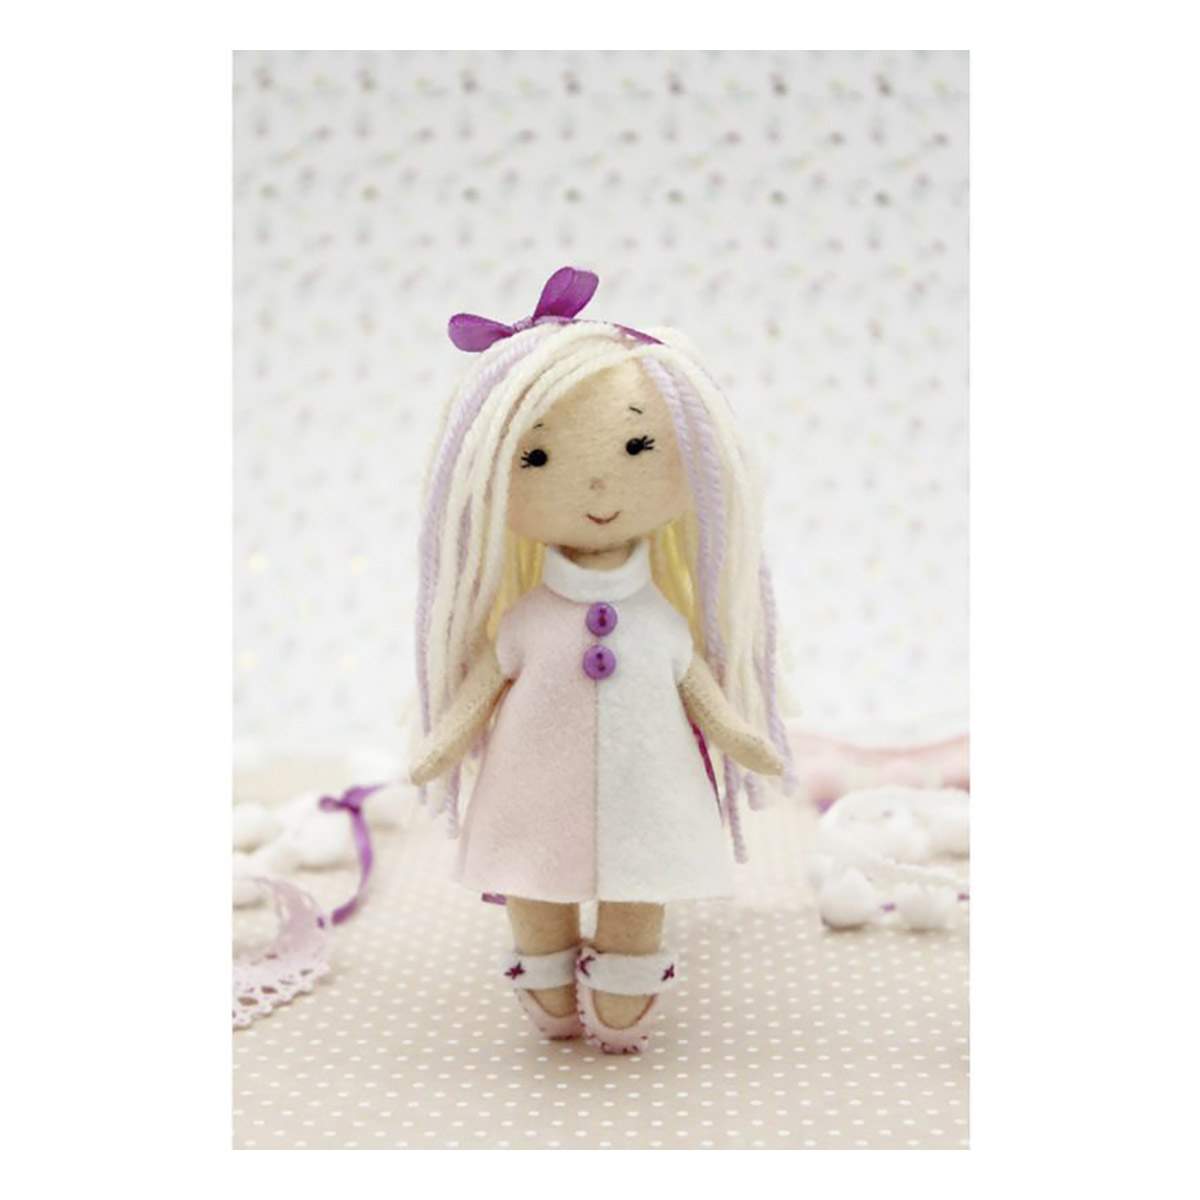 Набор для шитья Кукла Перловка из ткани П-102 «Мышка-Перлушка» игрушка-грелка 16 см лён хлопок